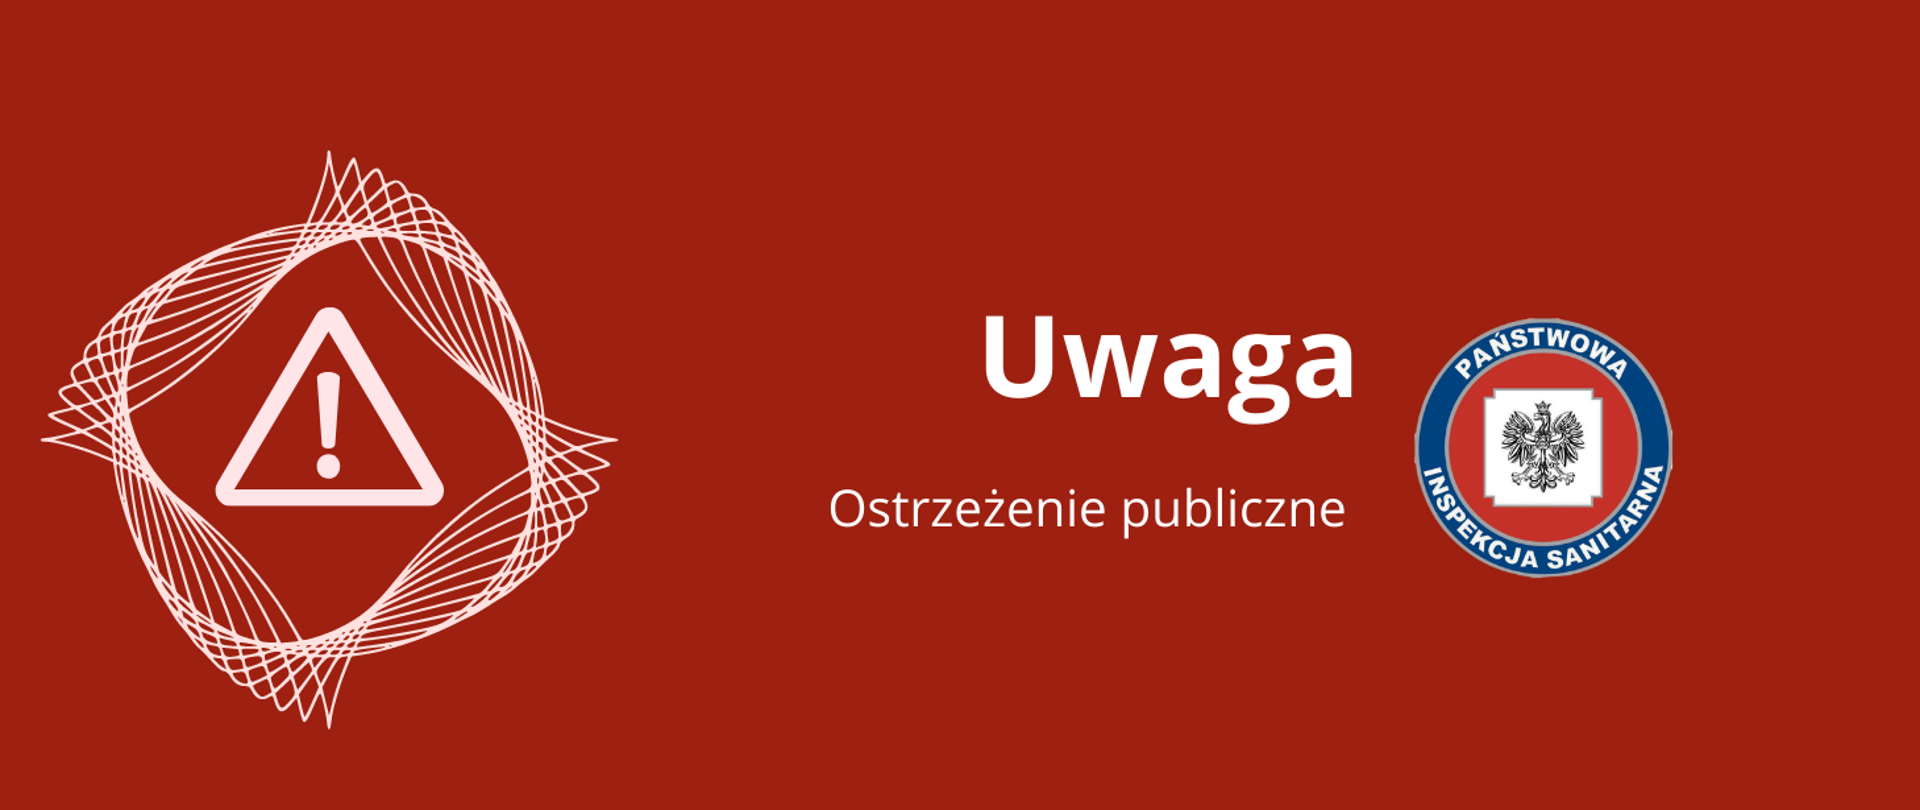 LOGO_UWAGA_Ostrzeżenie_publiczne